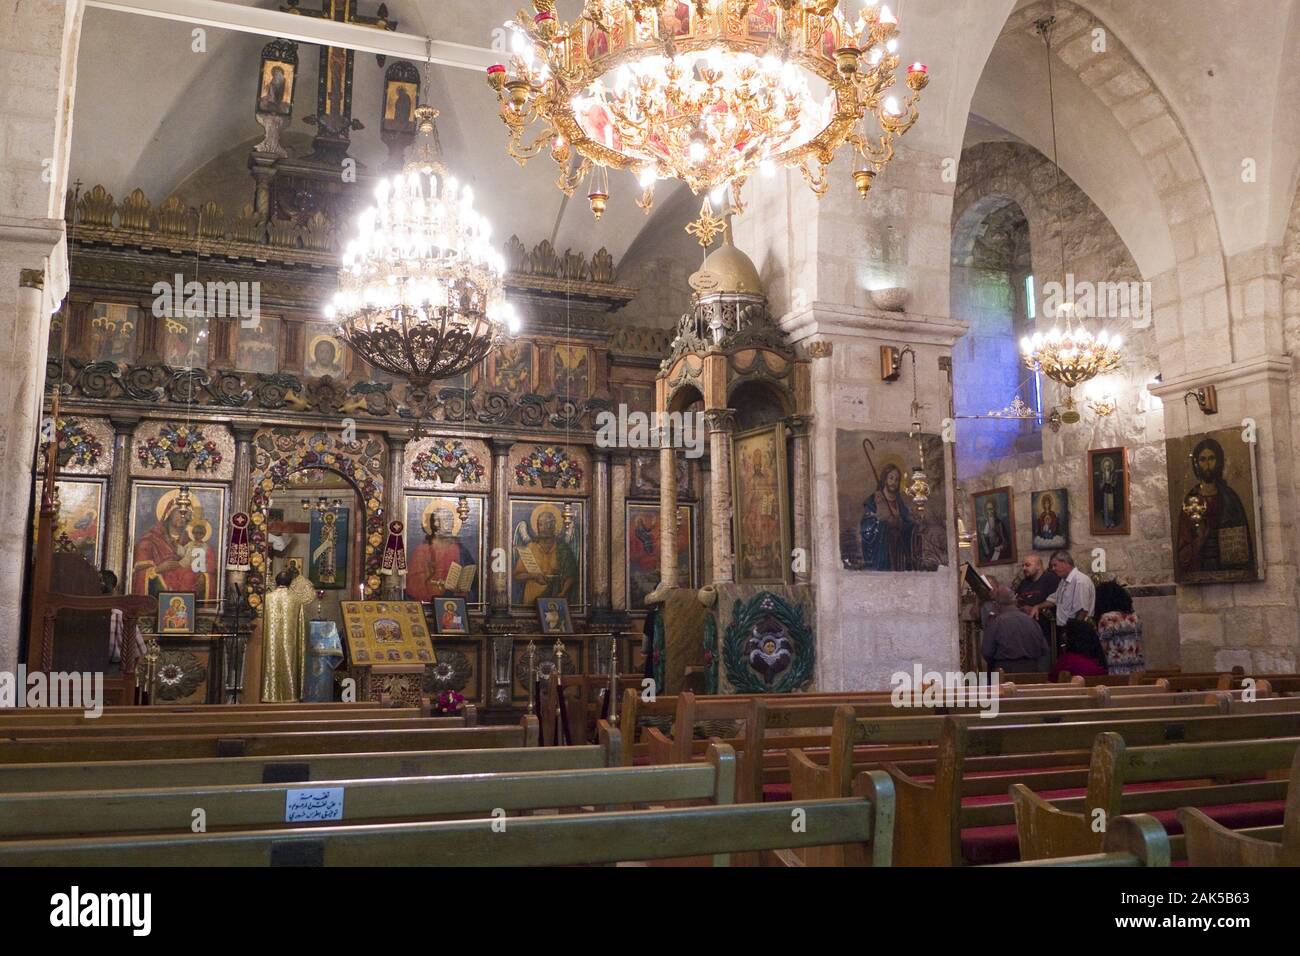 Christliche Kirche in Ramallah: Innenansischt, Israel | usage worldwide Stock Photo